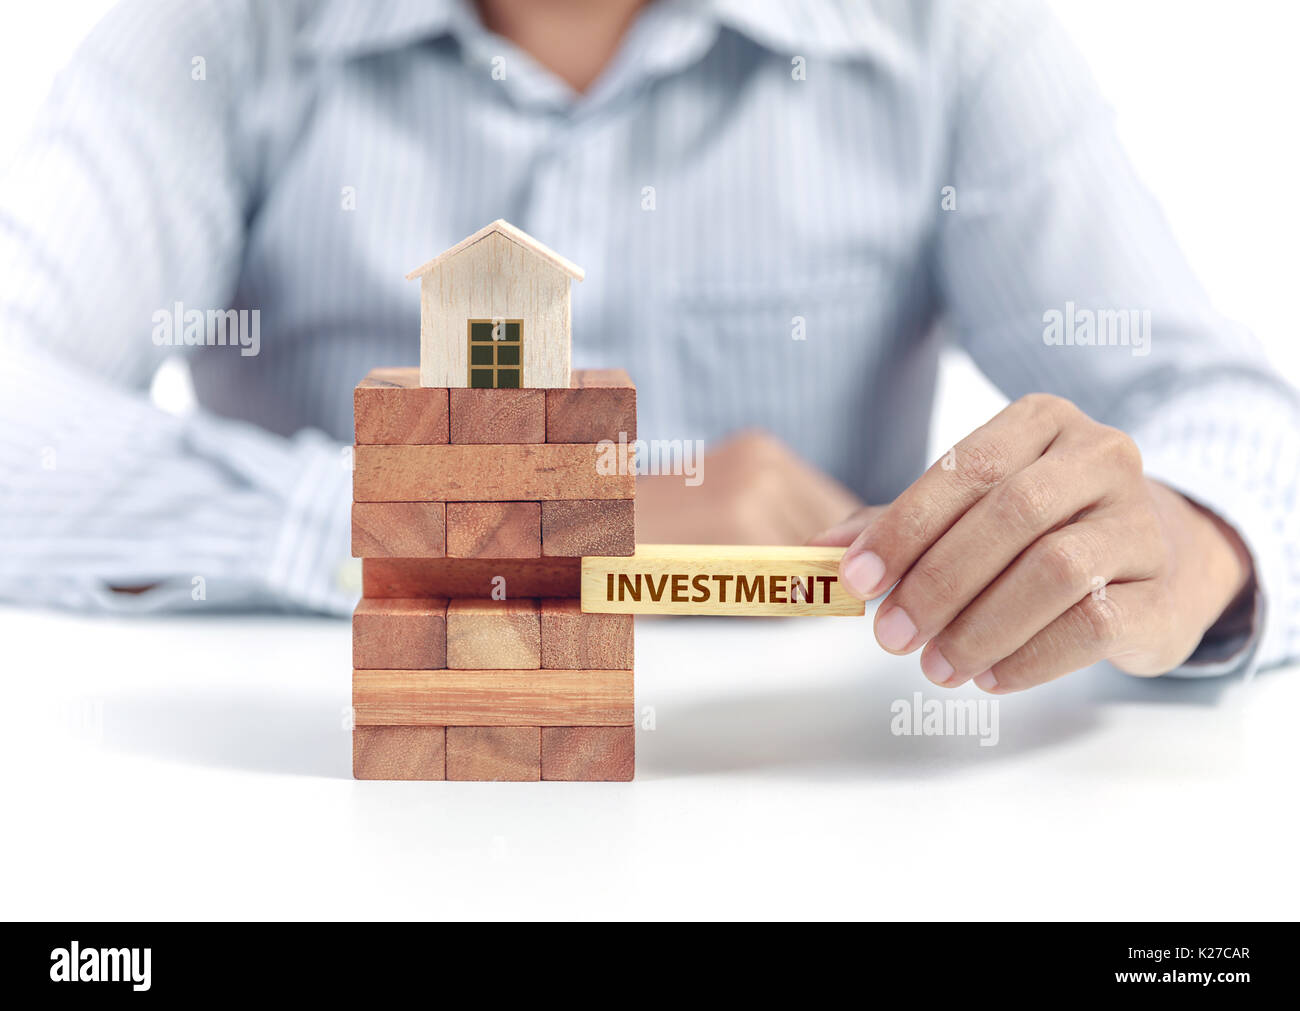 Imprenditore attesa parola investimenti su puzzle in legno con il modello di casa Foto Stock